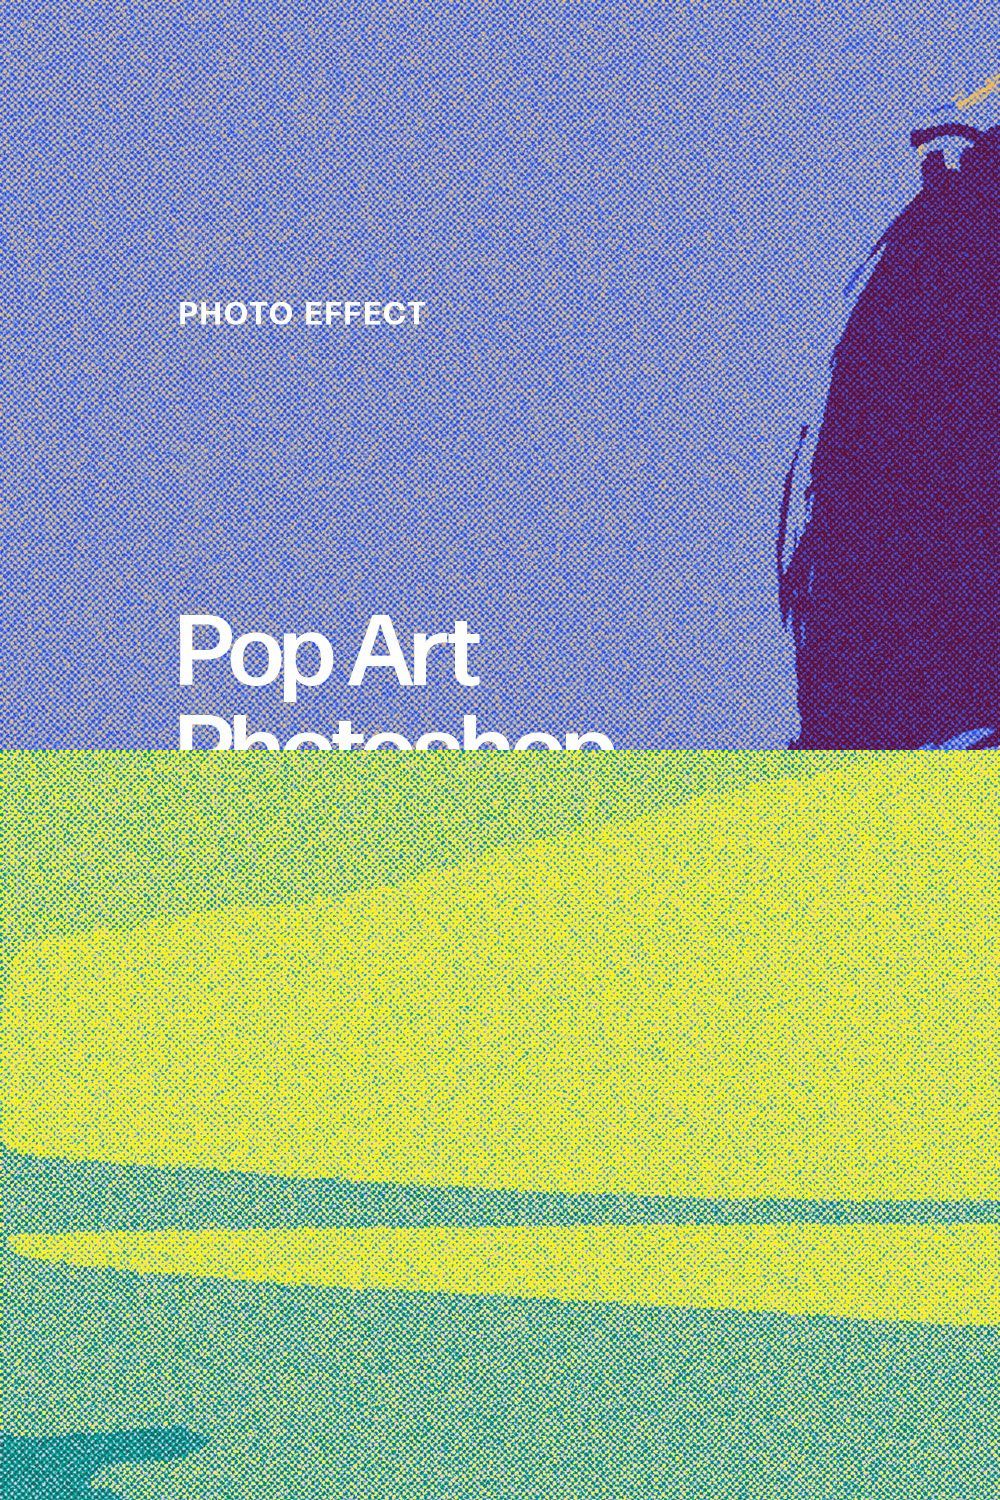 Pop Art Photoshop Effect pinterest preview image.